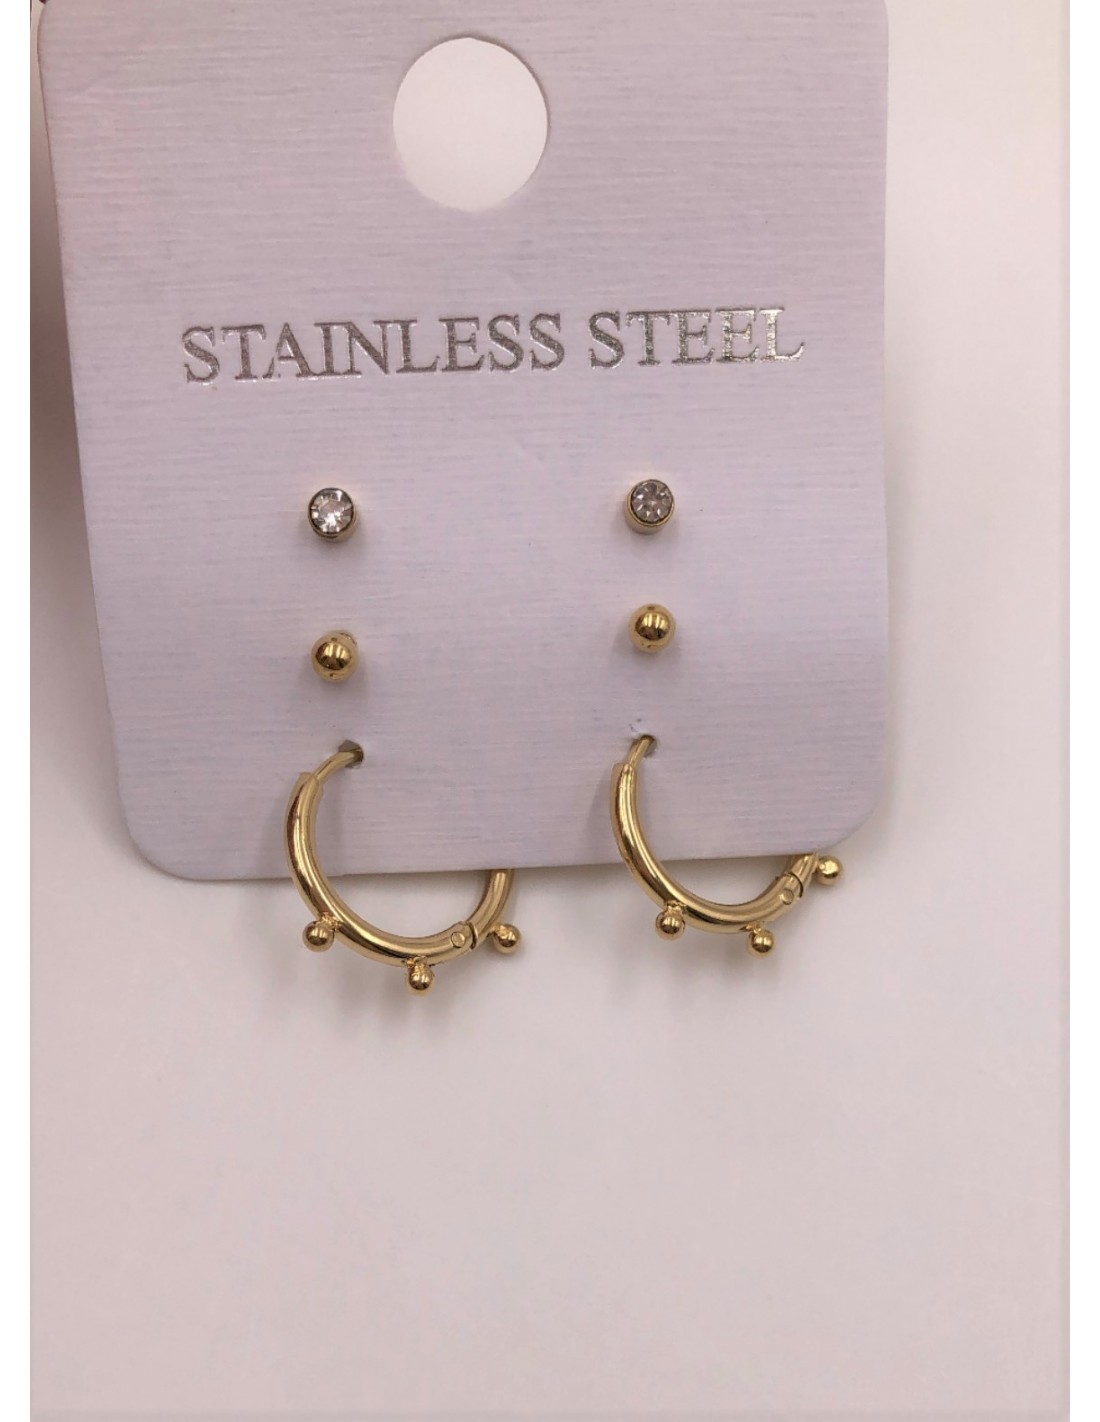 STAINLESS STEEL HOOP EARRINGS-GOLD.